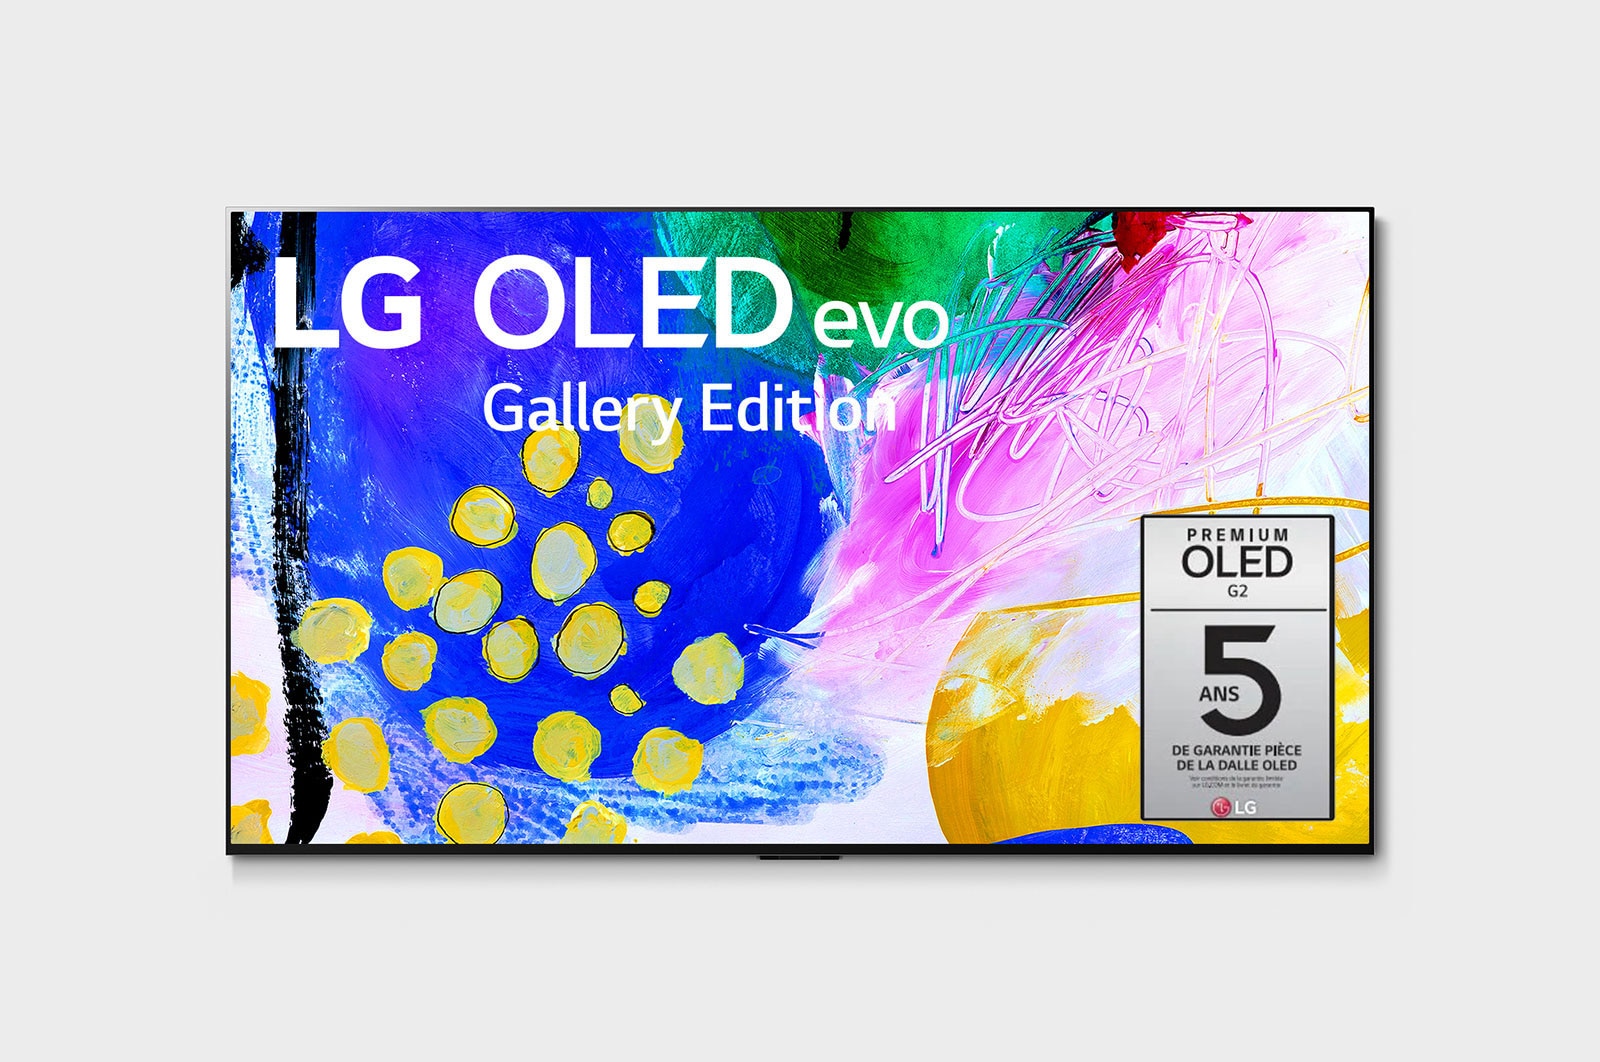 LG G2 evo Édition Gallery 77 pouces de LG, OLED77G2PUA